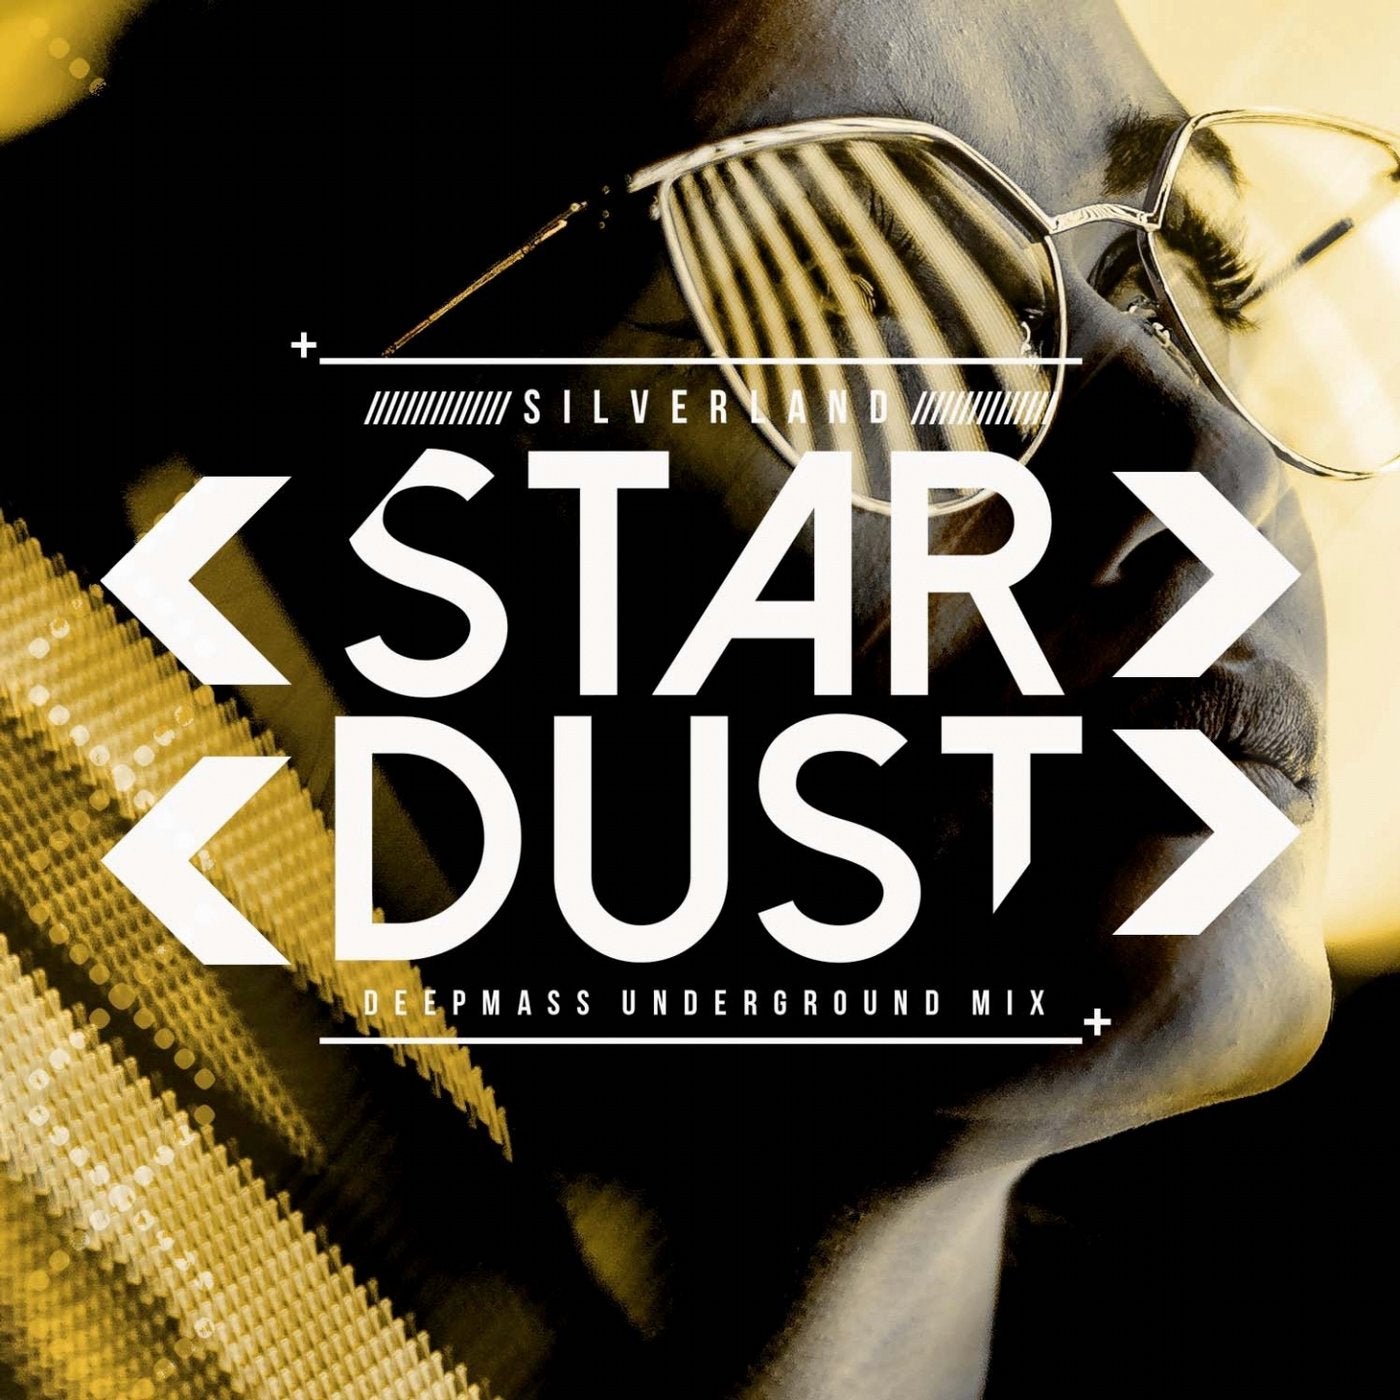 Stardust (Deepmass Underground Mix)